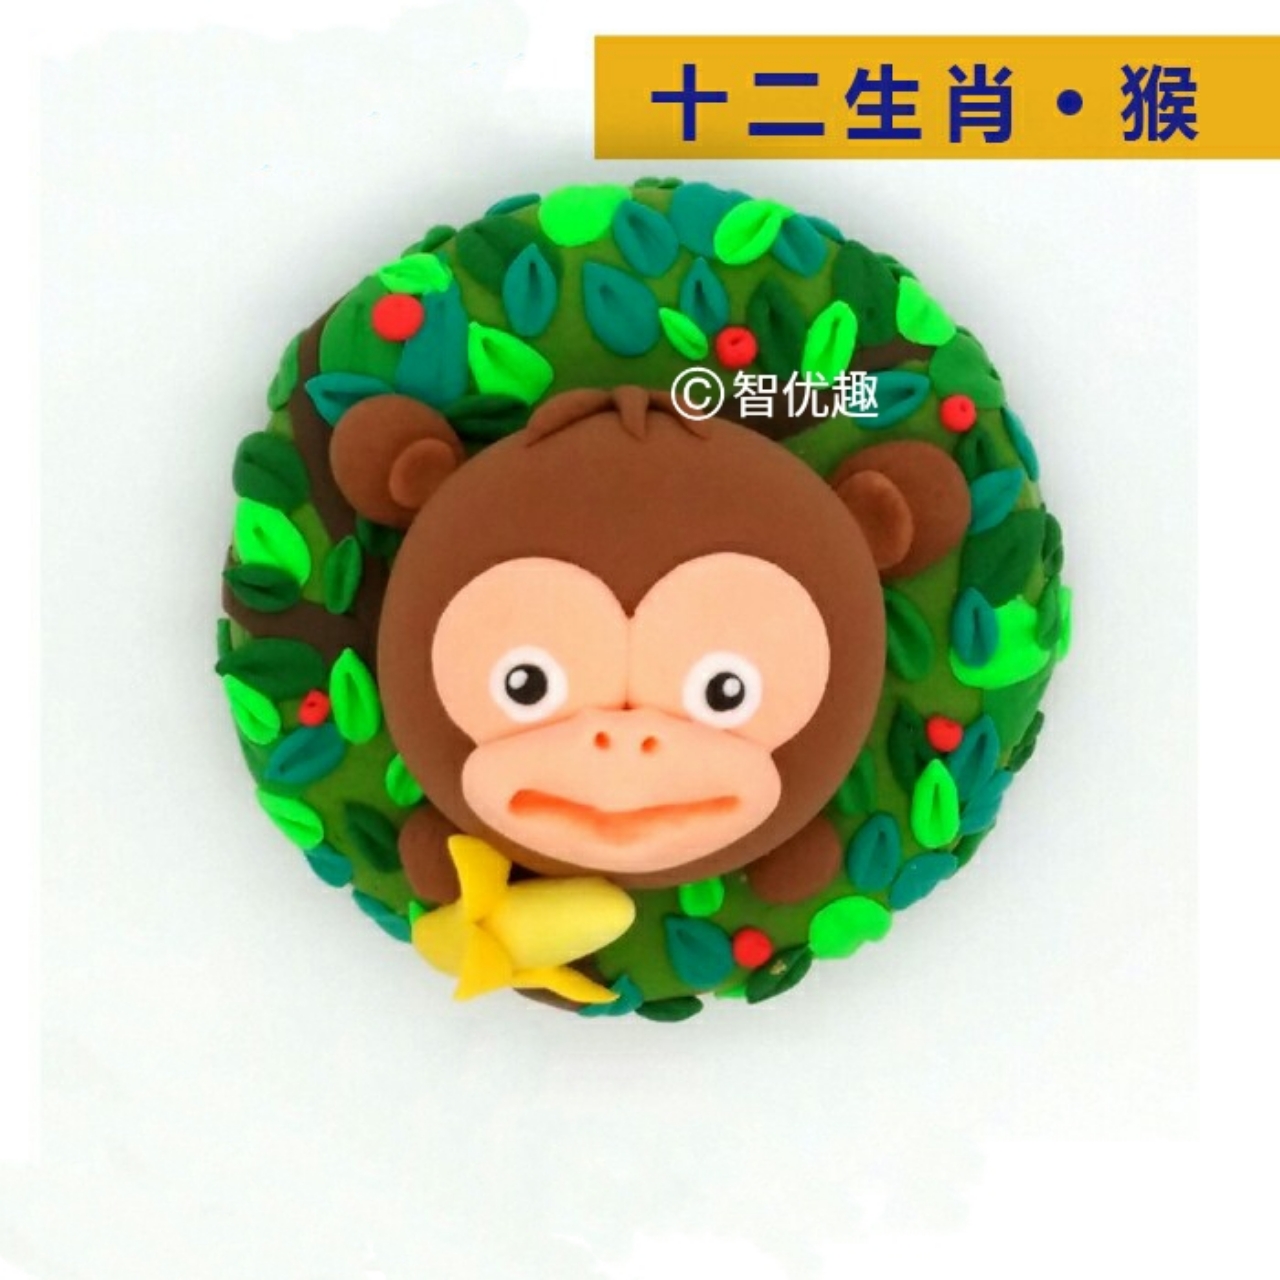 粘土猴子可爱图片